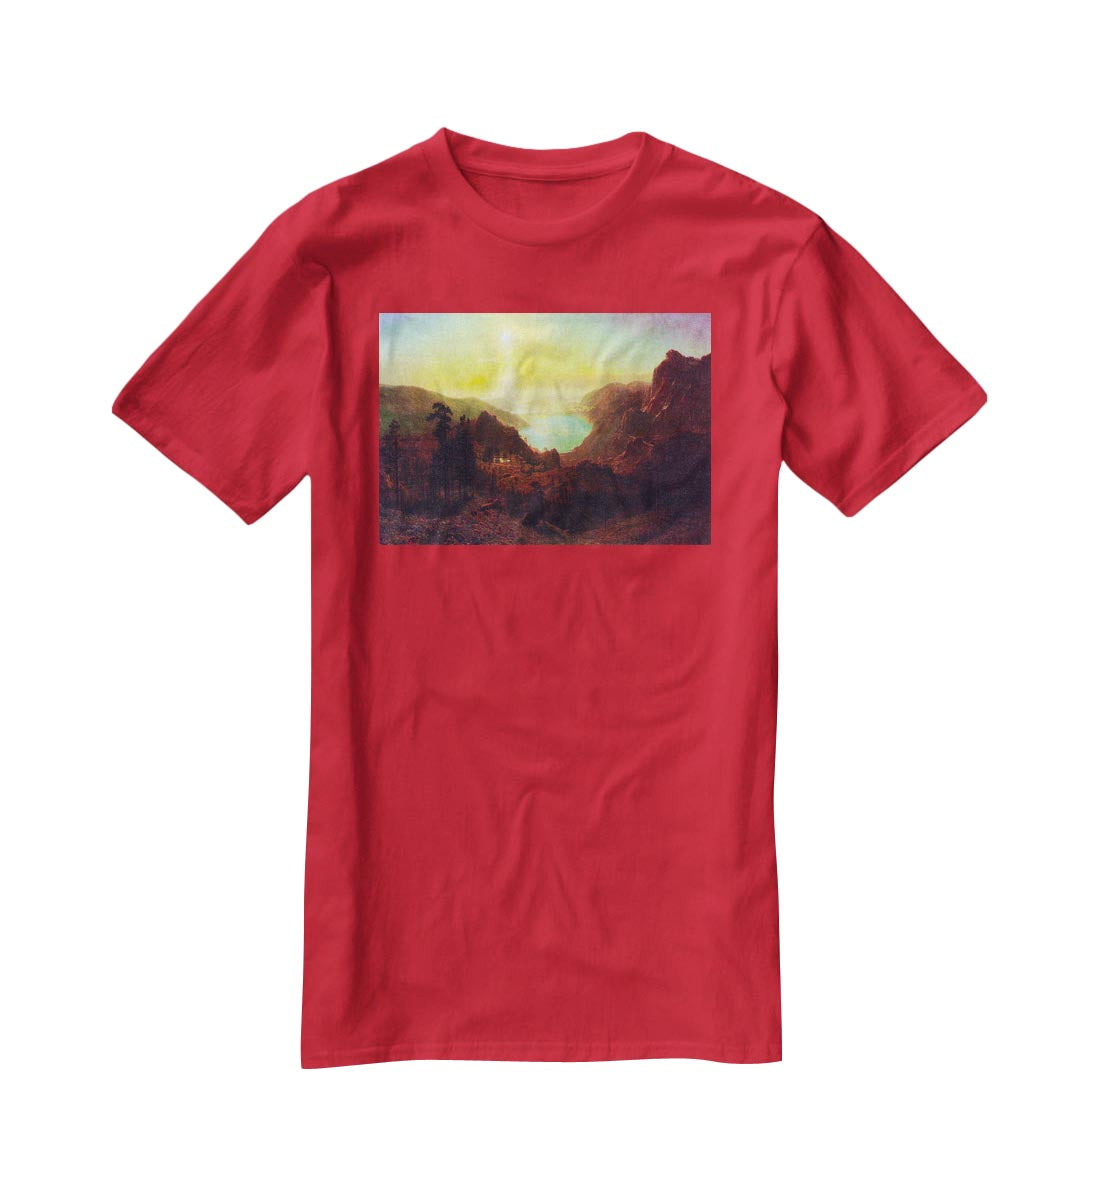 Donner Lake 2 by Bierstadt T-Shirt - Canvas Art Rocks - 4